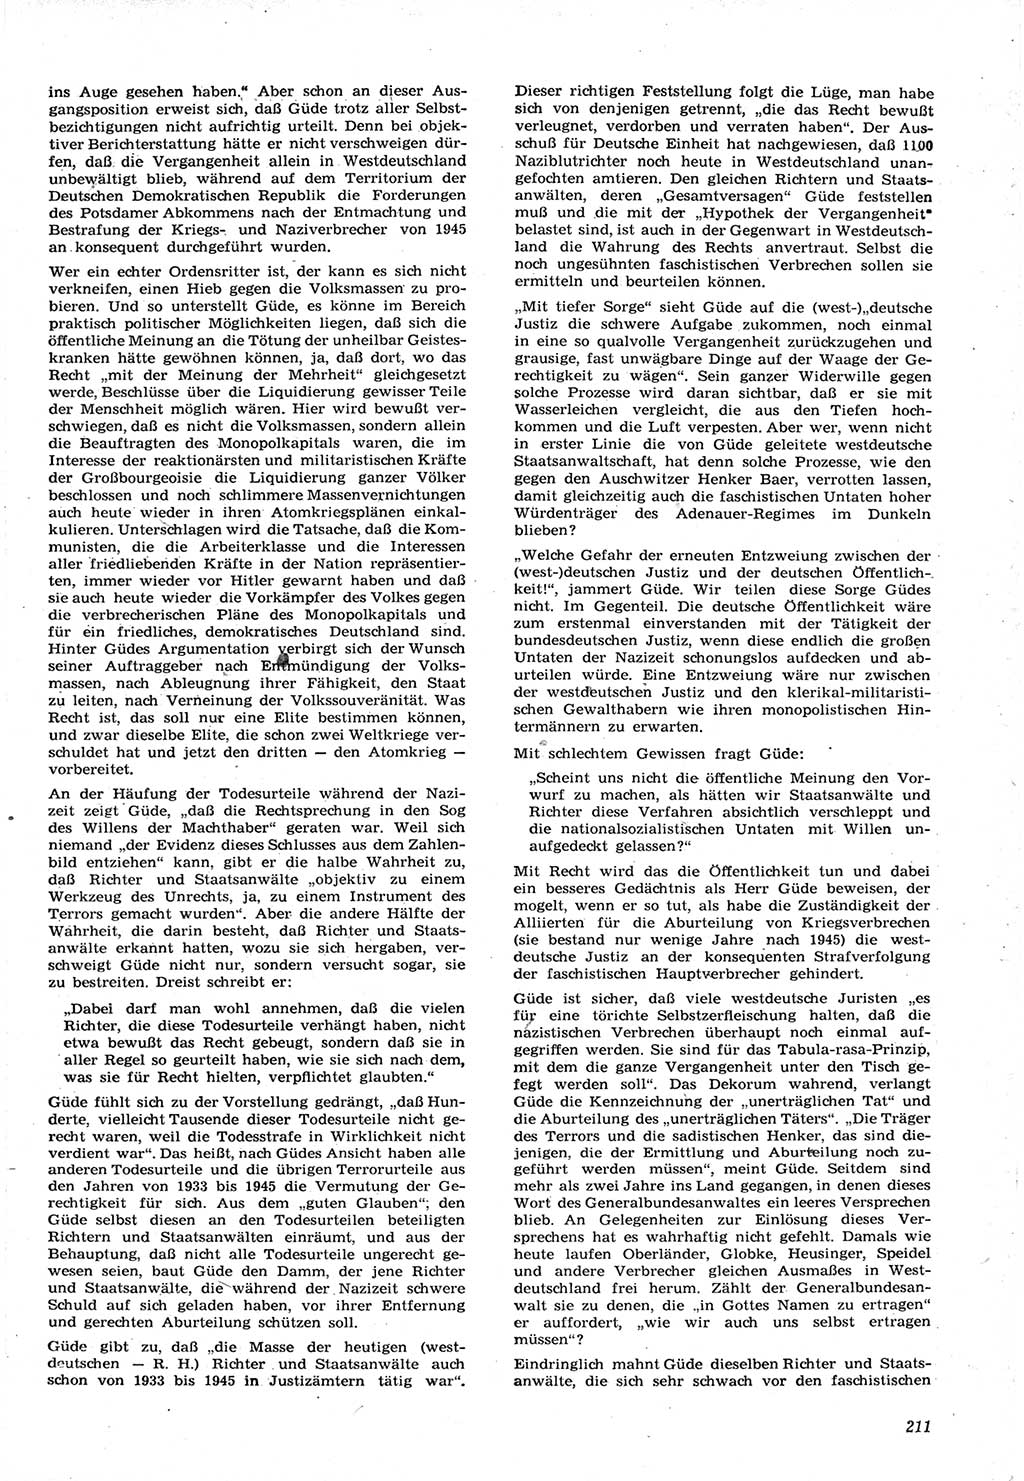 Neue Justiz (NJ), Zeitschrift für Recht und Rechtswissenschaft [Deutsche Demokratische Republik (DDR)], 15. Jahrgang 1961, Seite 211 (NJ DDR 1961, S. 211)